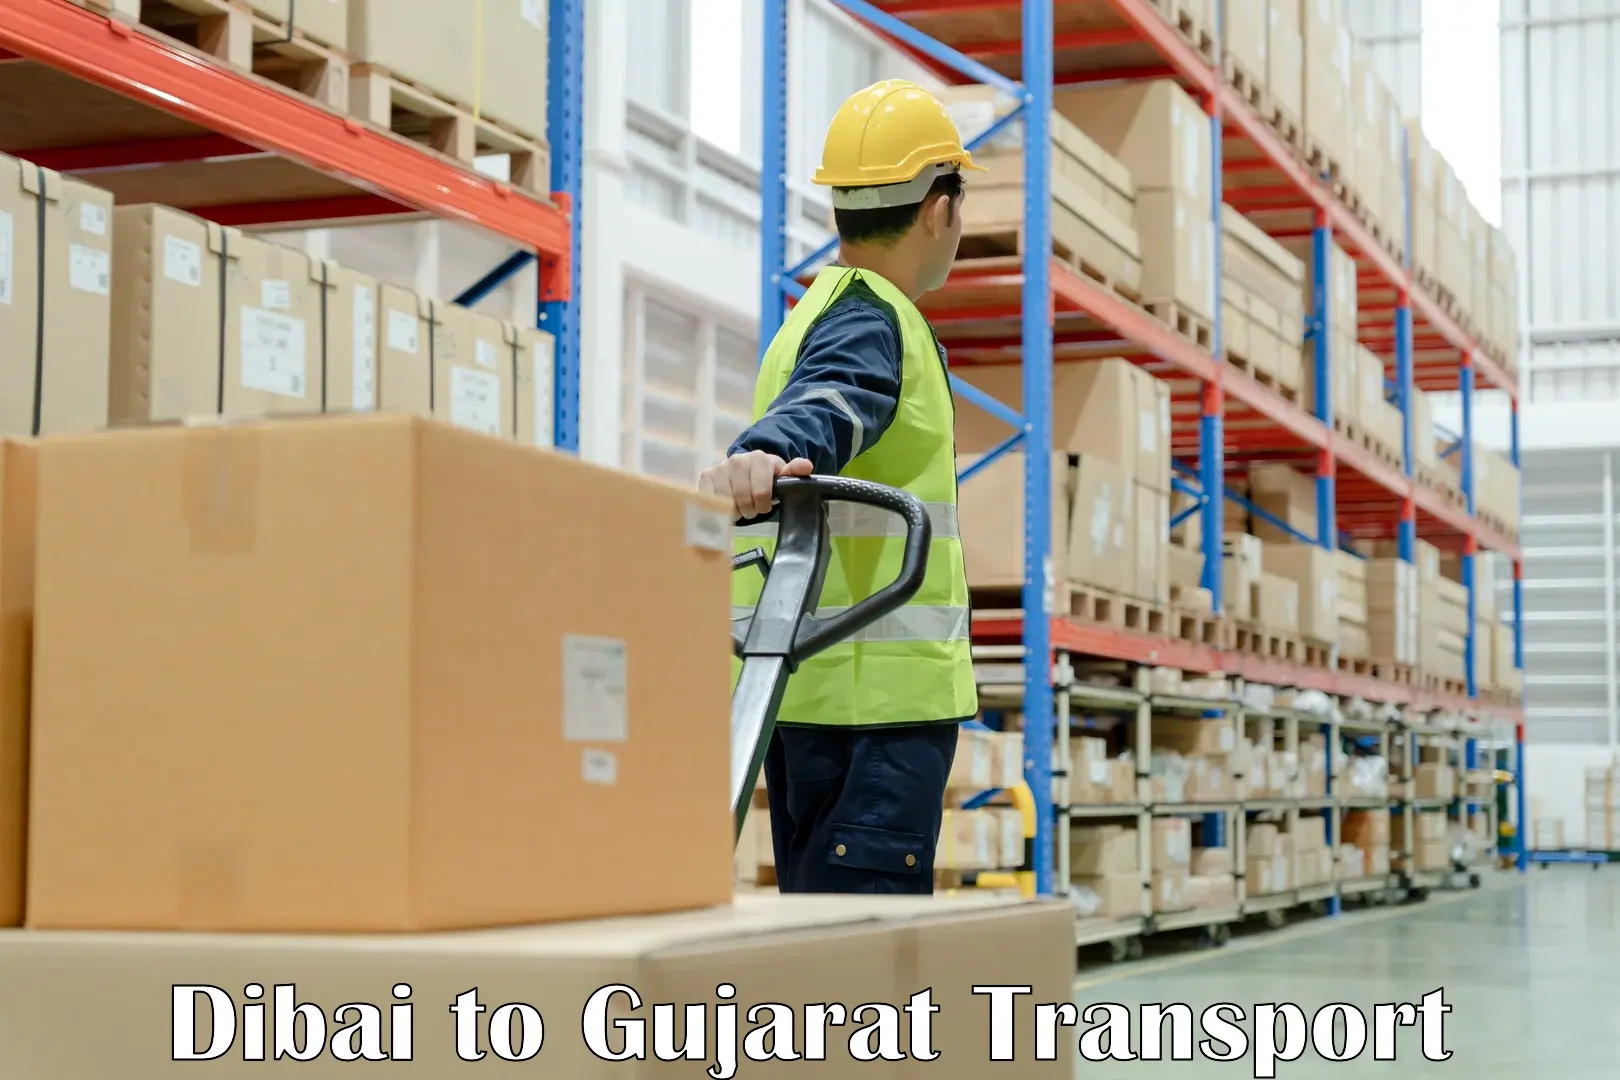 Furniture transport service Dibai to Bayad